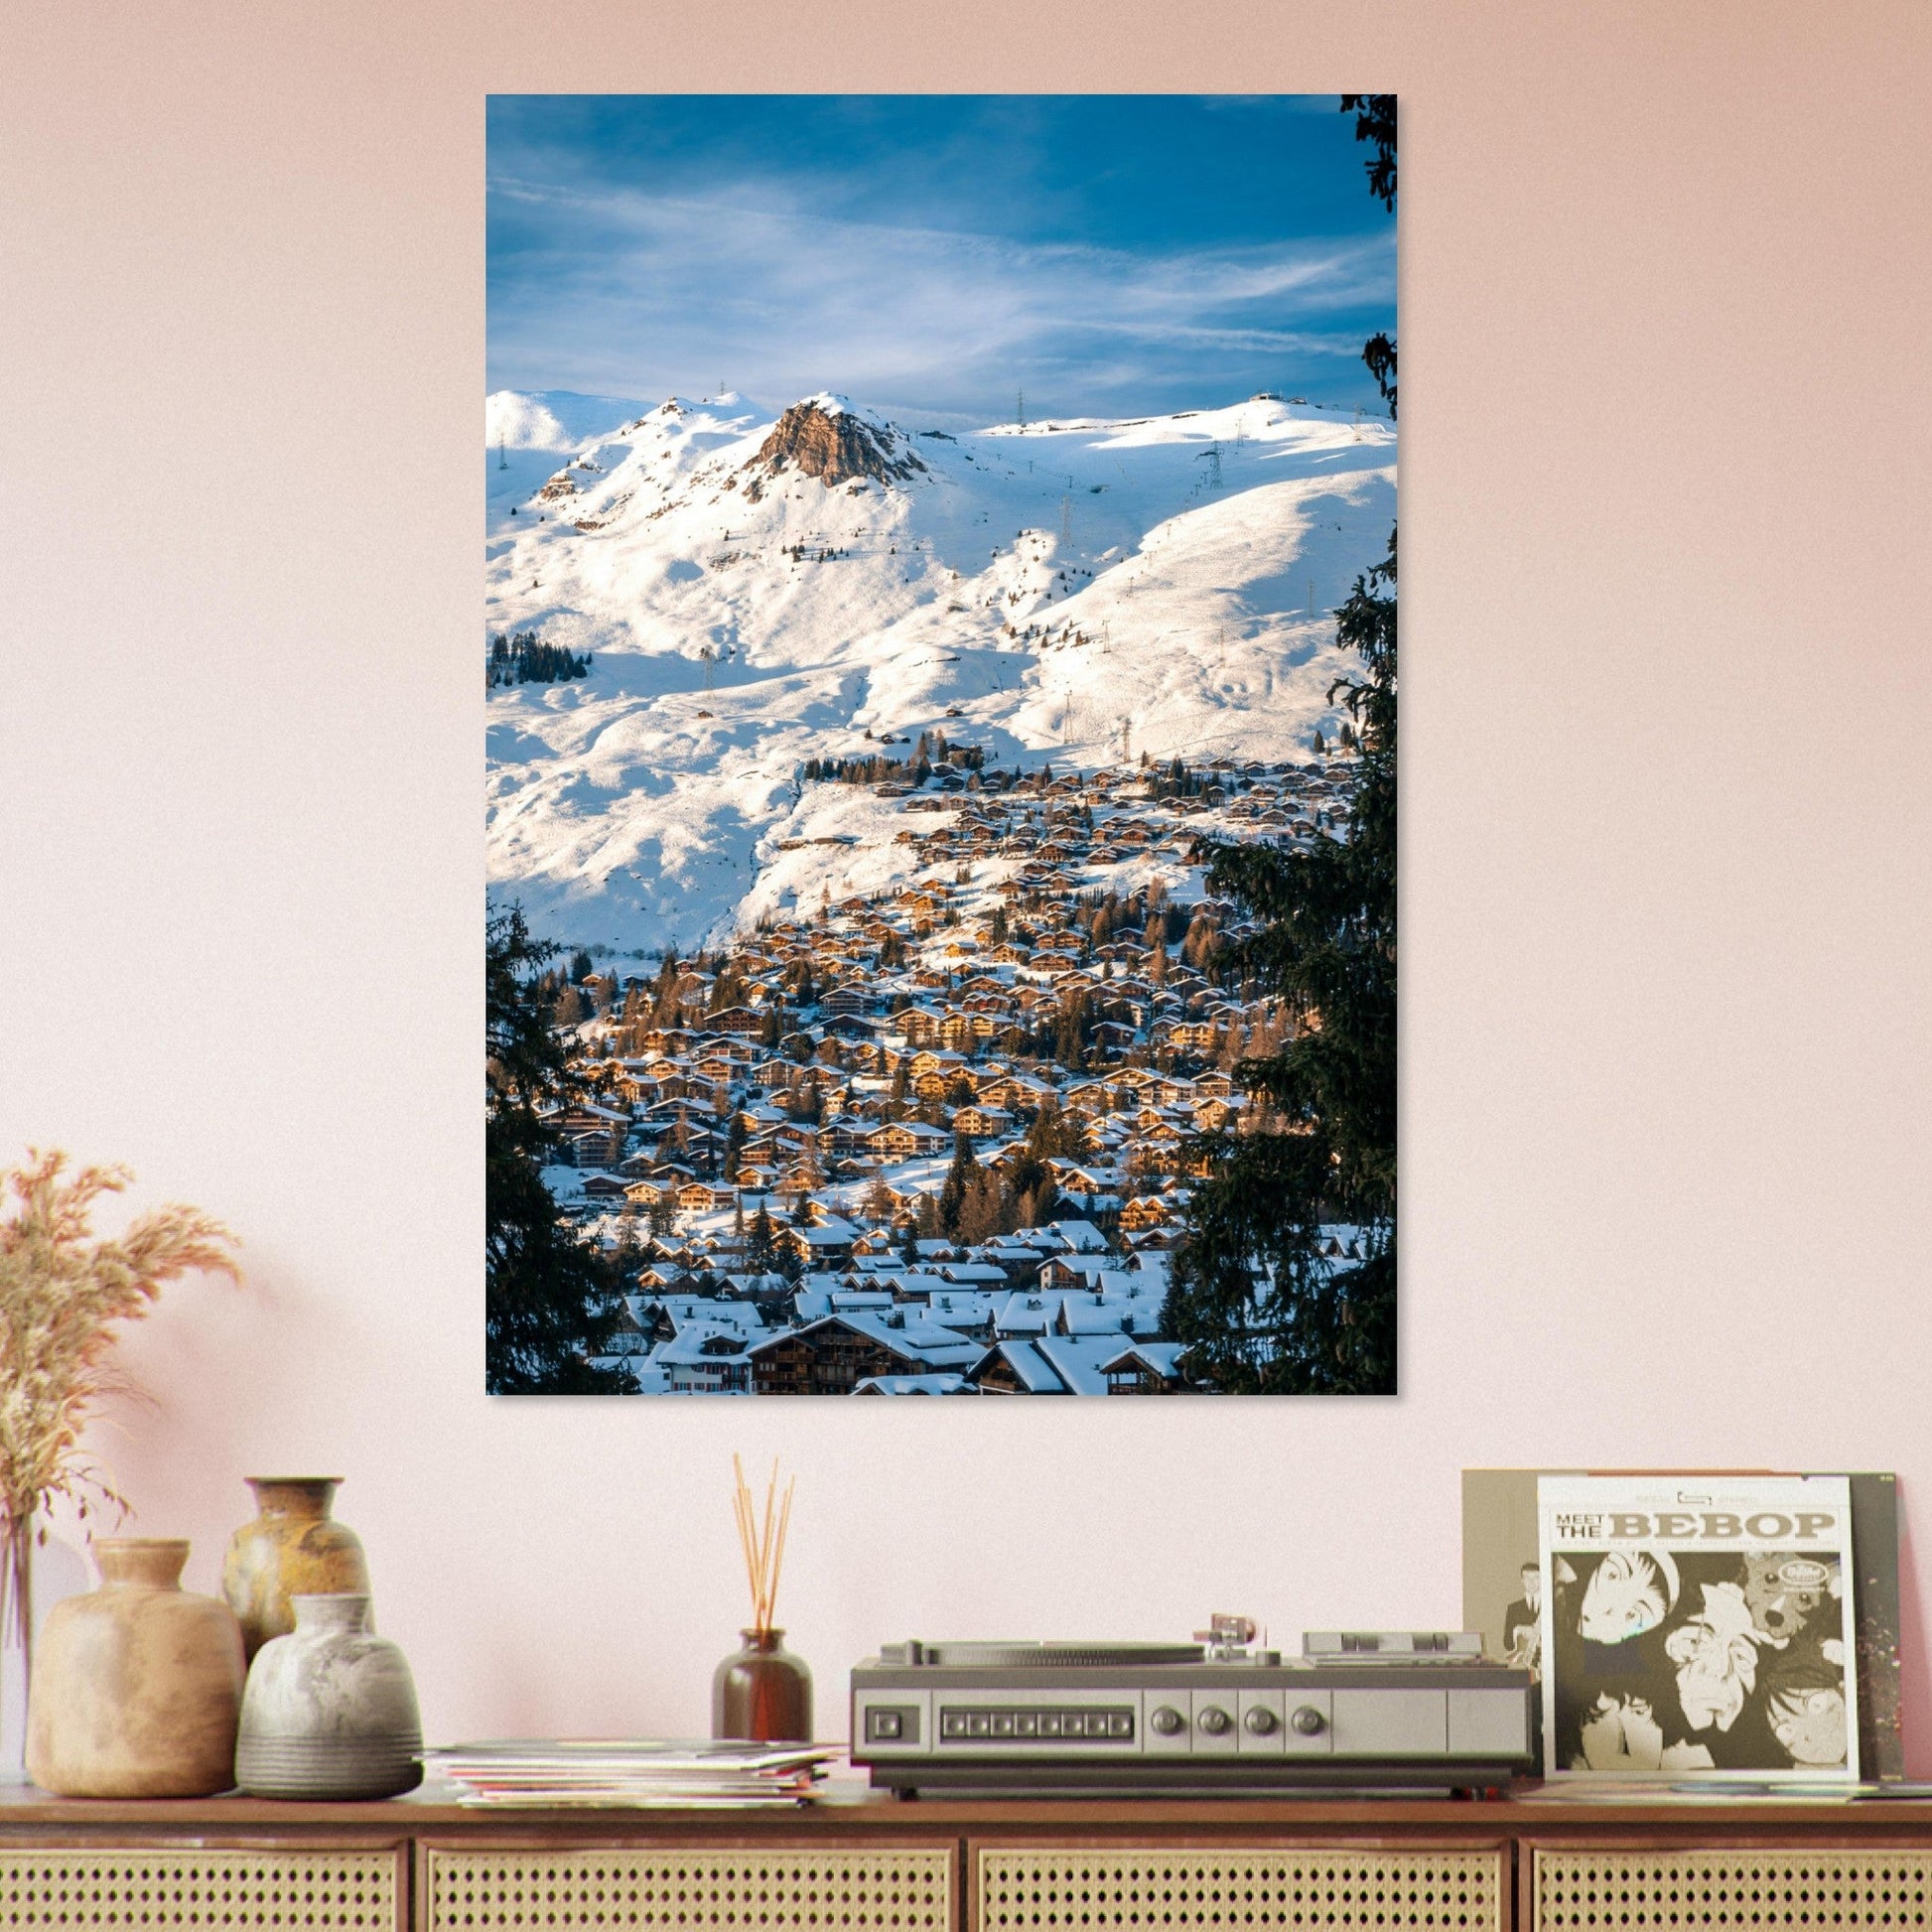 Vente Photo du domaine skiable de Verbier en hiver, Suisse #1 - Tableau photo alu montagne